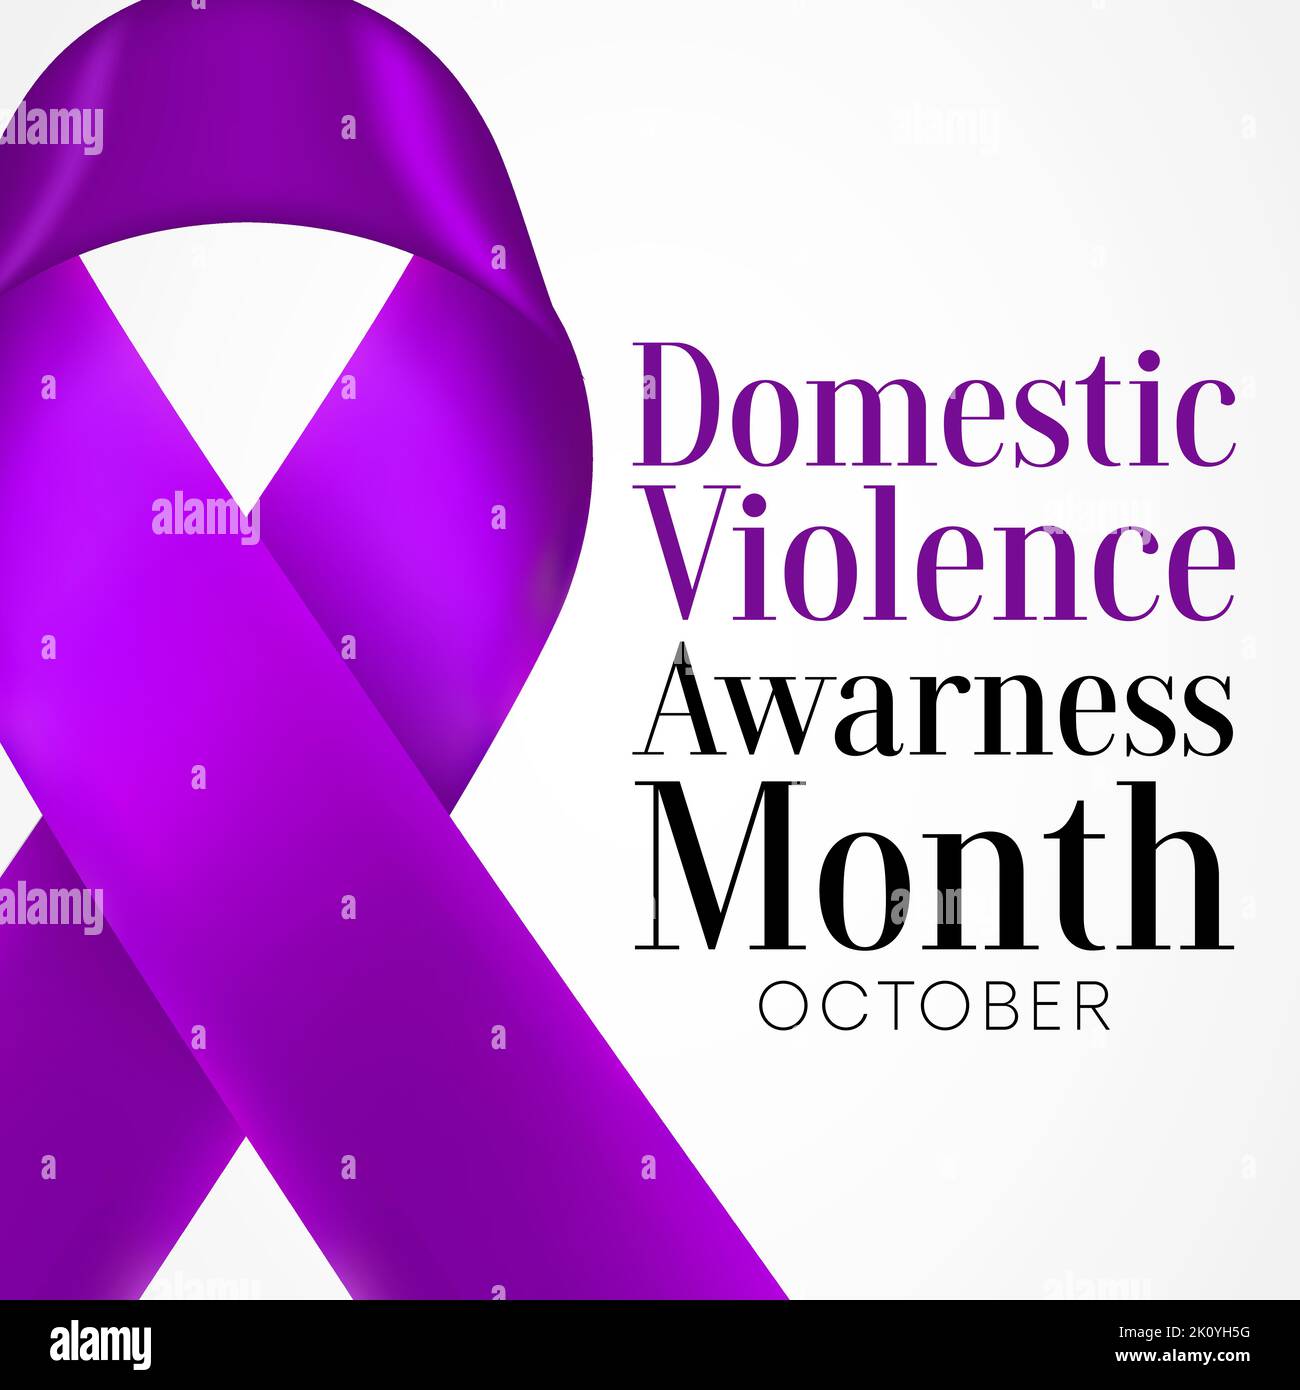 Der Monat des Bewusstseins für häusliche Gewalt (DVAM) wird jedes Jahr im Oktober begangen, um Überlebende von häuslicher Gewalt zu würdigen und eine Stimme für ihre Opfer zu sein. Stock Vektor